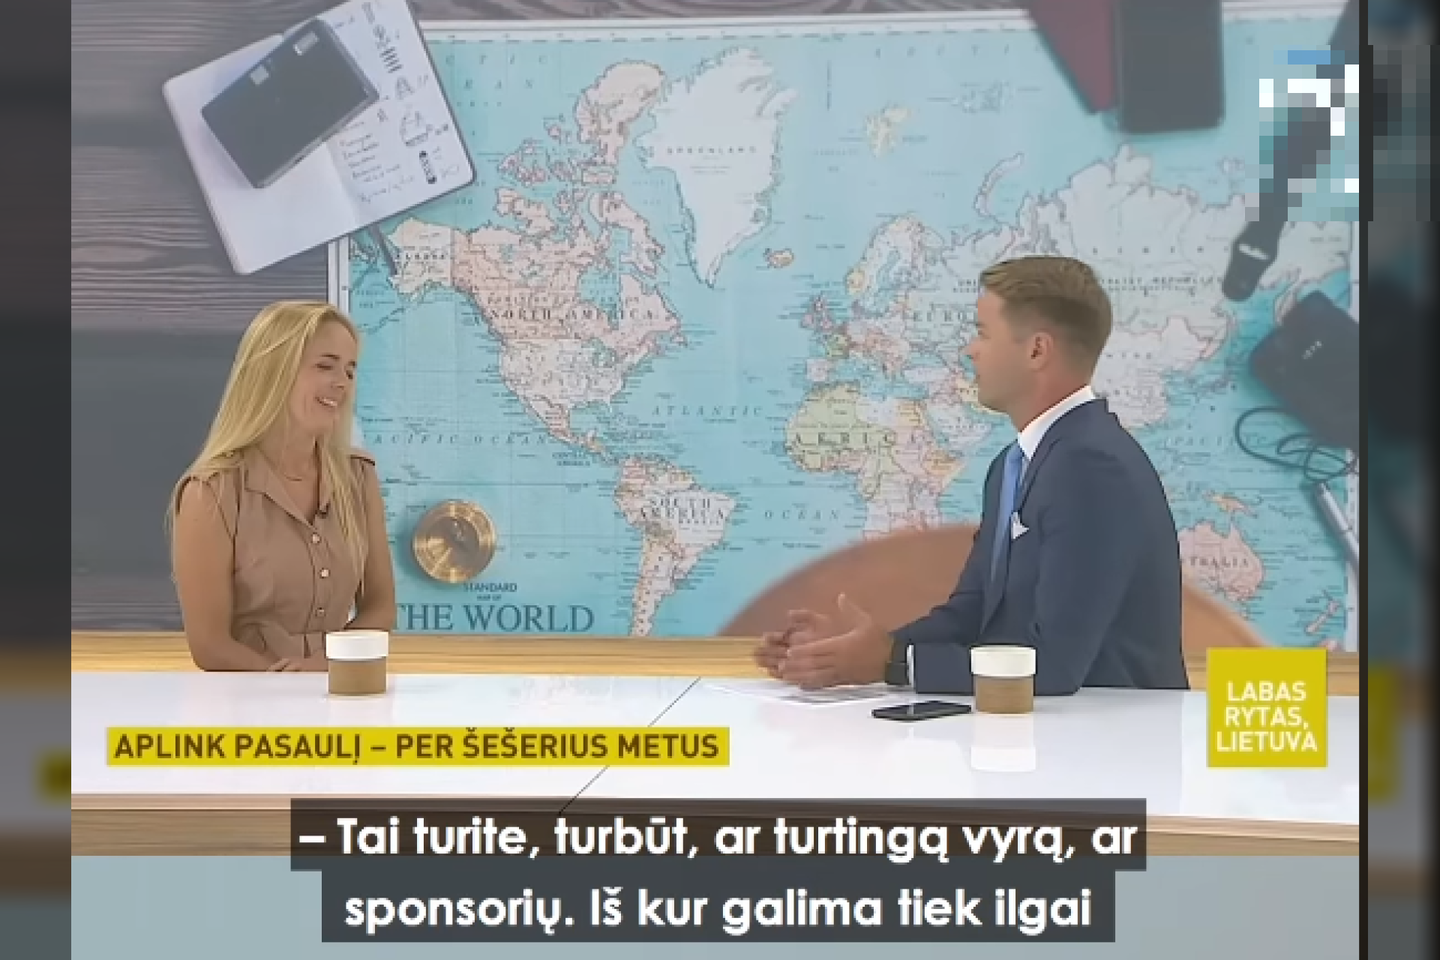  Vedėjo klausimas sukėlė feisbuko vartotojų pasipiktinimą.<br>Feisbuko nuotr. – laidos „Labas rytas, Lietuva“ stop kadras.